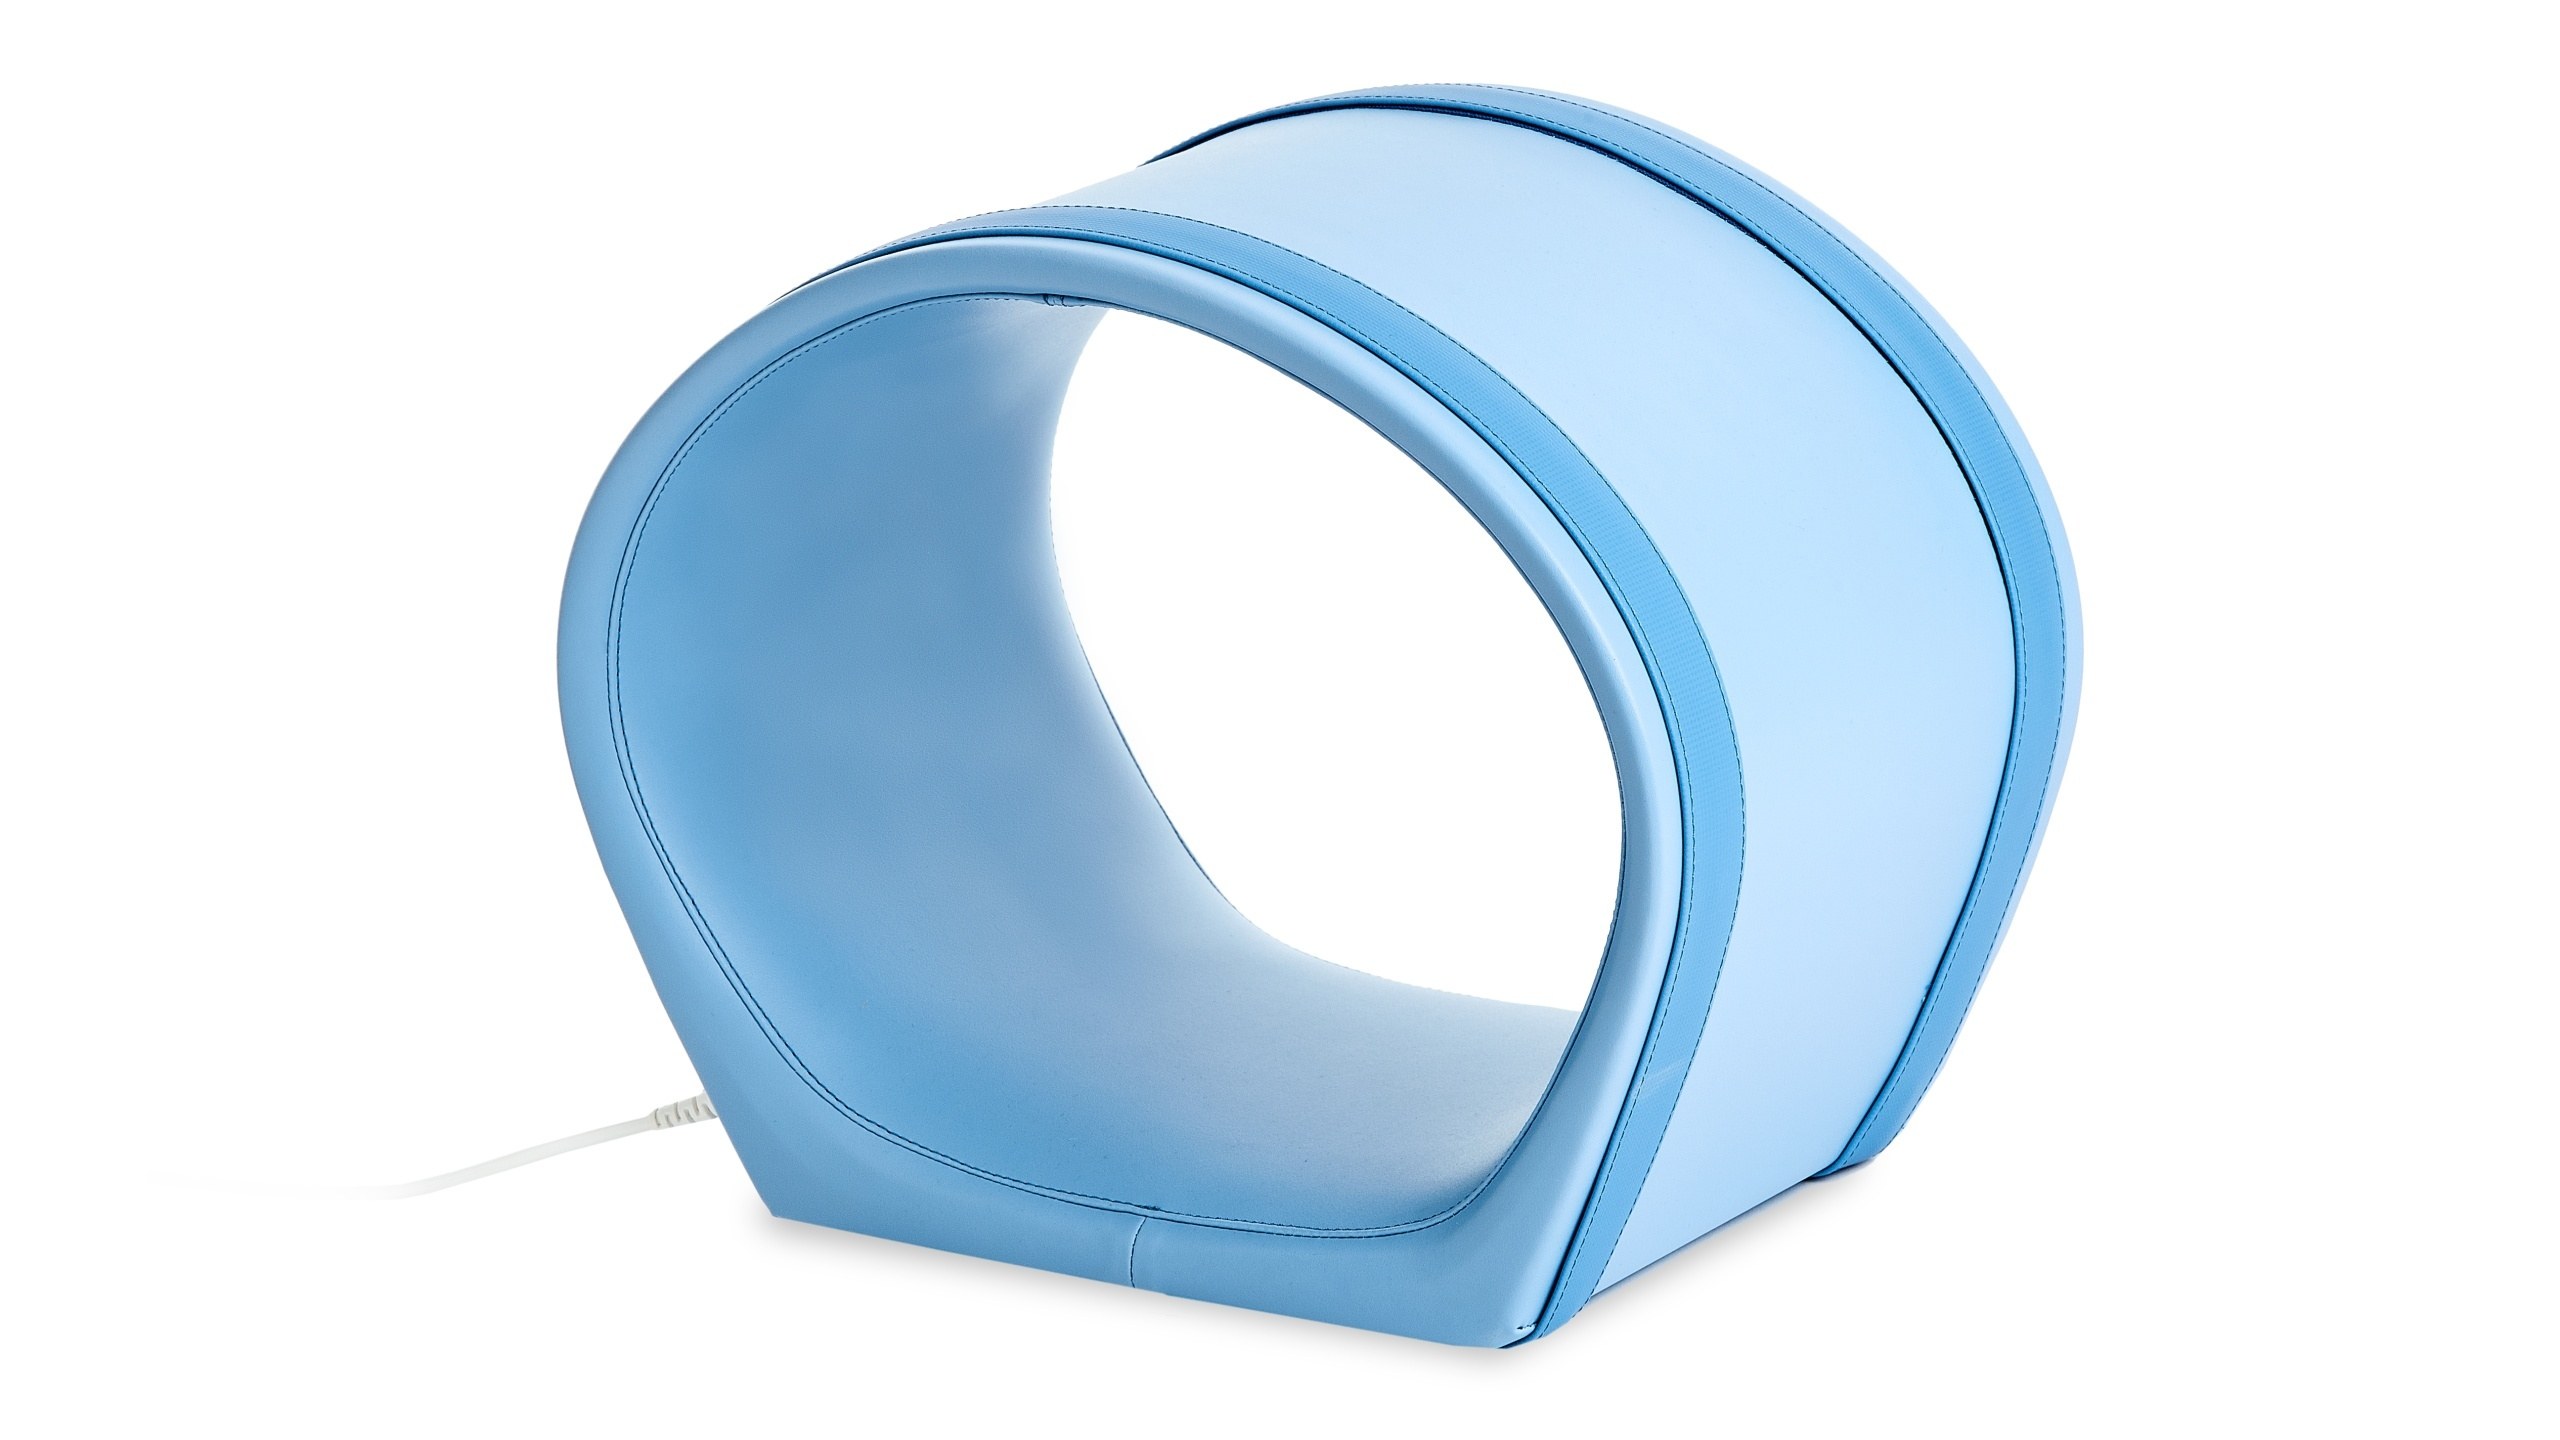 Aplicador de magnetoterapia A3S circular con fondo plano utilizando el campo magnético pulsante 3D patentado.